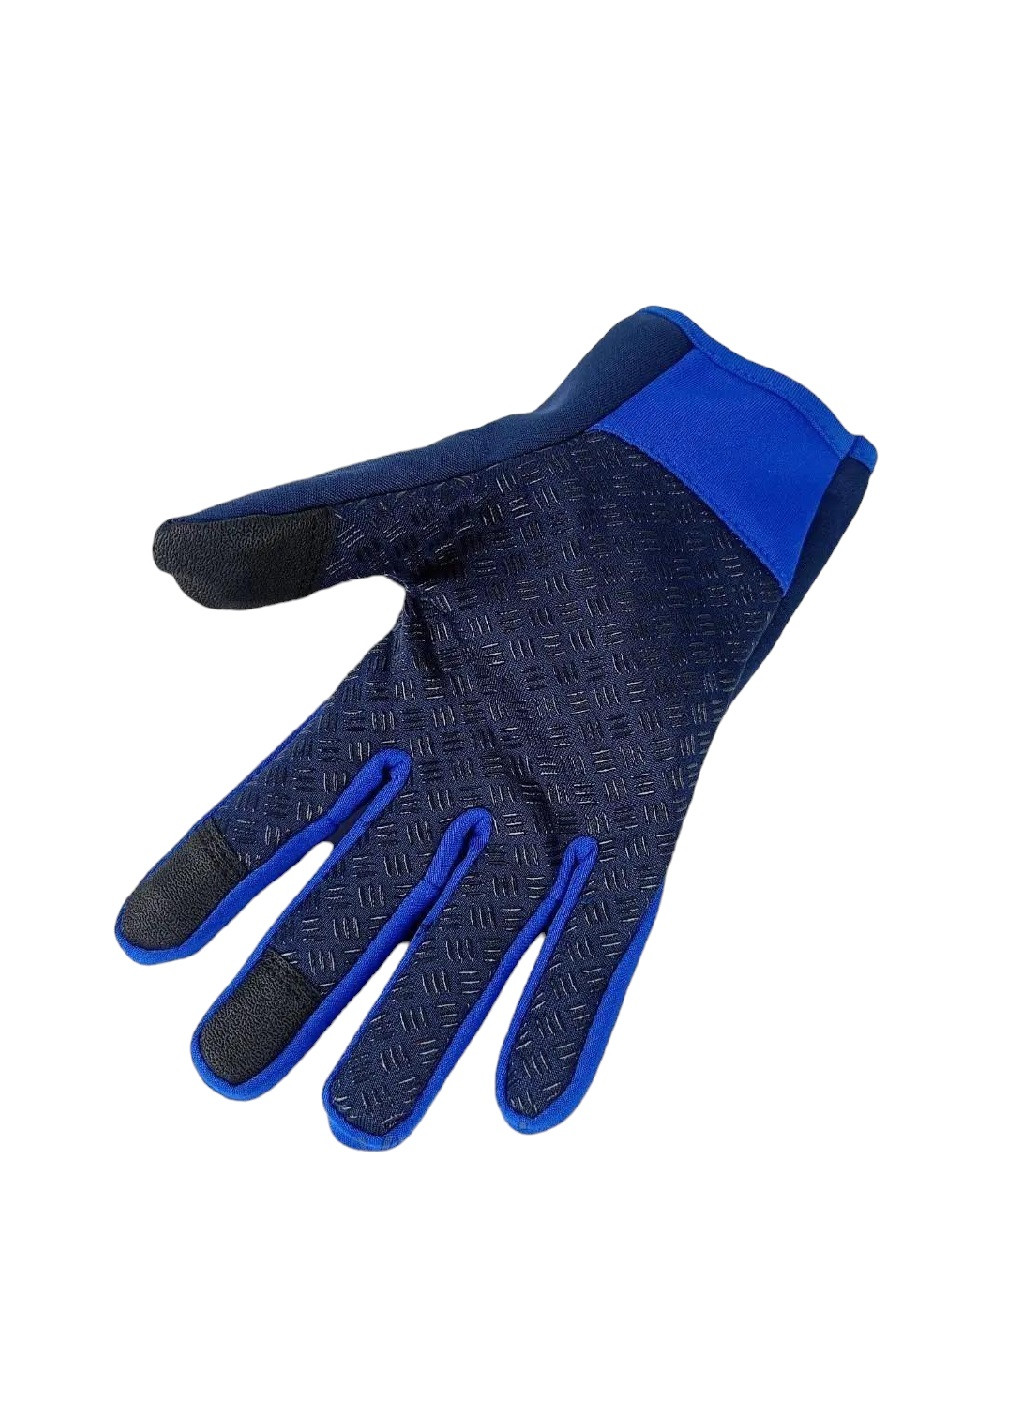 Велоперчатки велосипедные перчатки с водоотталкивающим сенсорным покрытием спандекс флис (476033-Prob) Синие XL Unbranded (275863531)